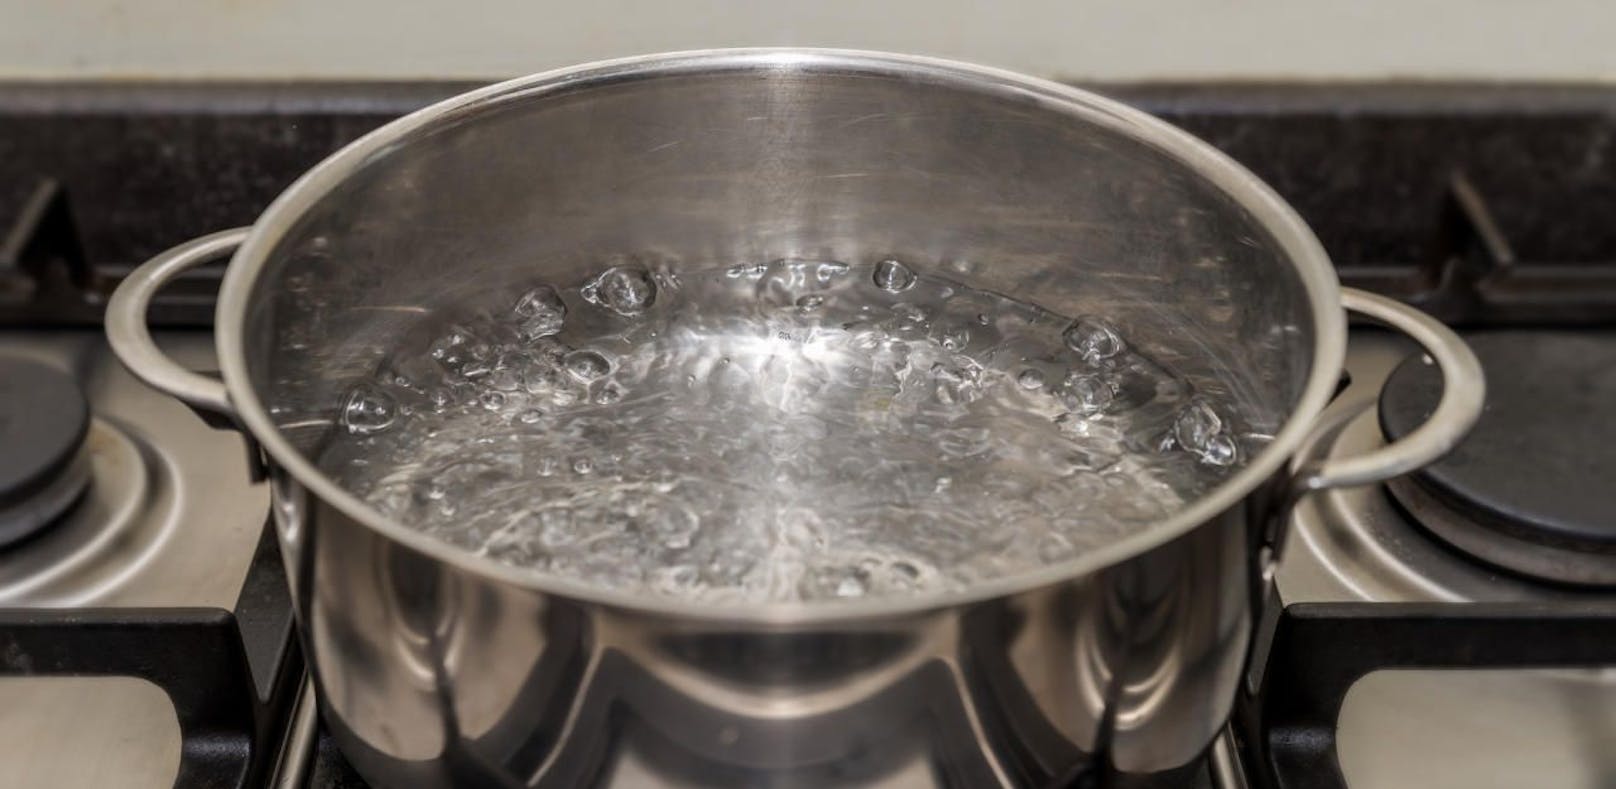 (Symbolbild) Kochendes Wasser als &quot;altes ayurvedisches Rezept&quot;? Man ließt schon viel Blödsinn...